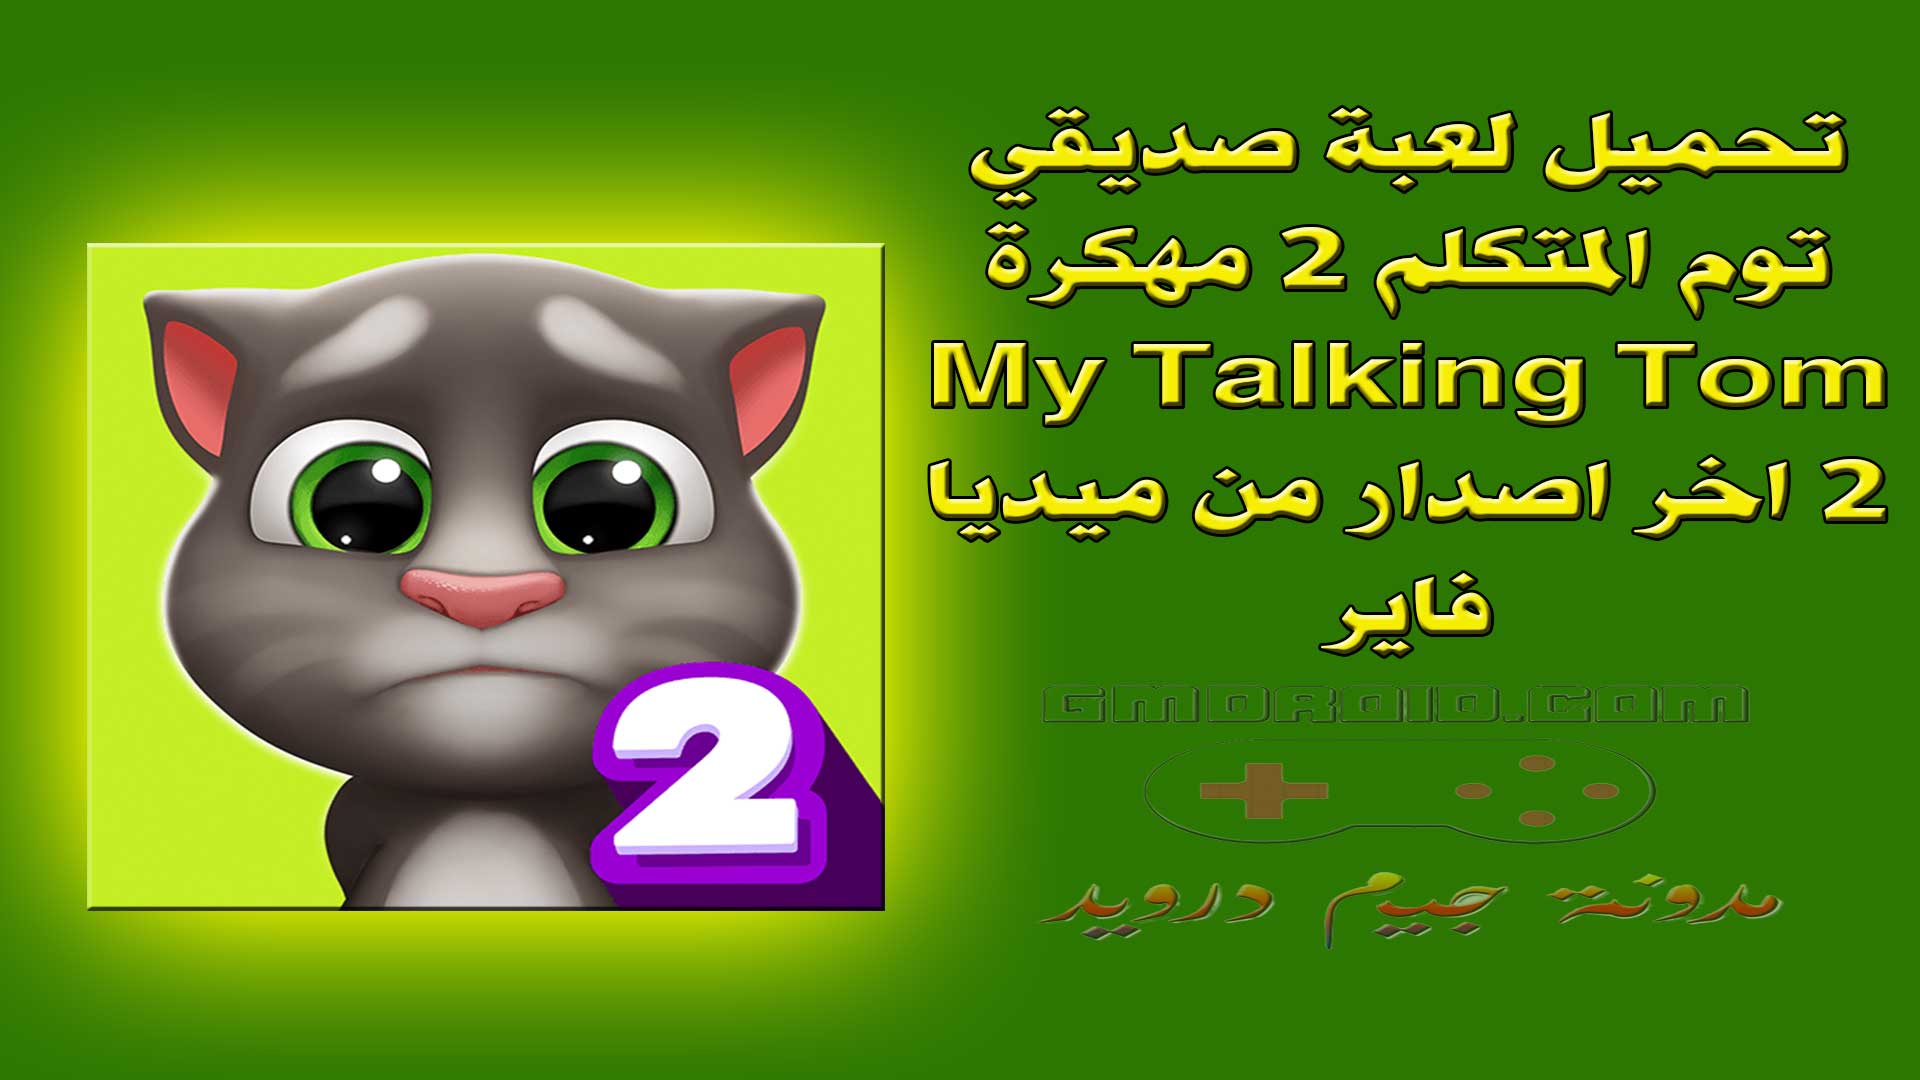 تحميل لعبة صديقي توم المتكلم 2 مهكرة My Talking Tom 2 اخر اصدار من ميديا فاير